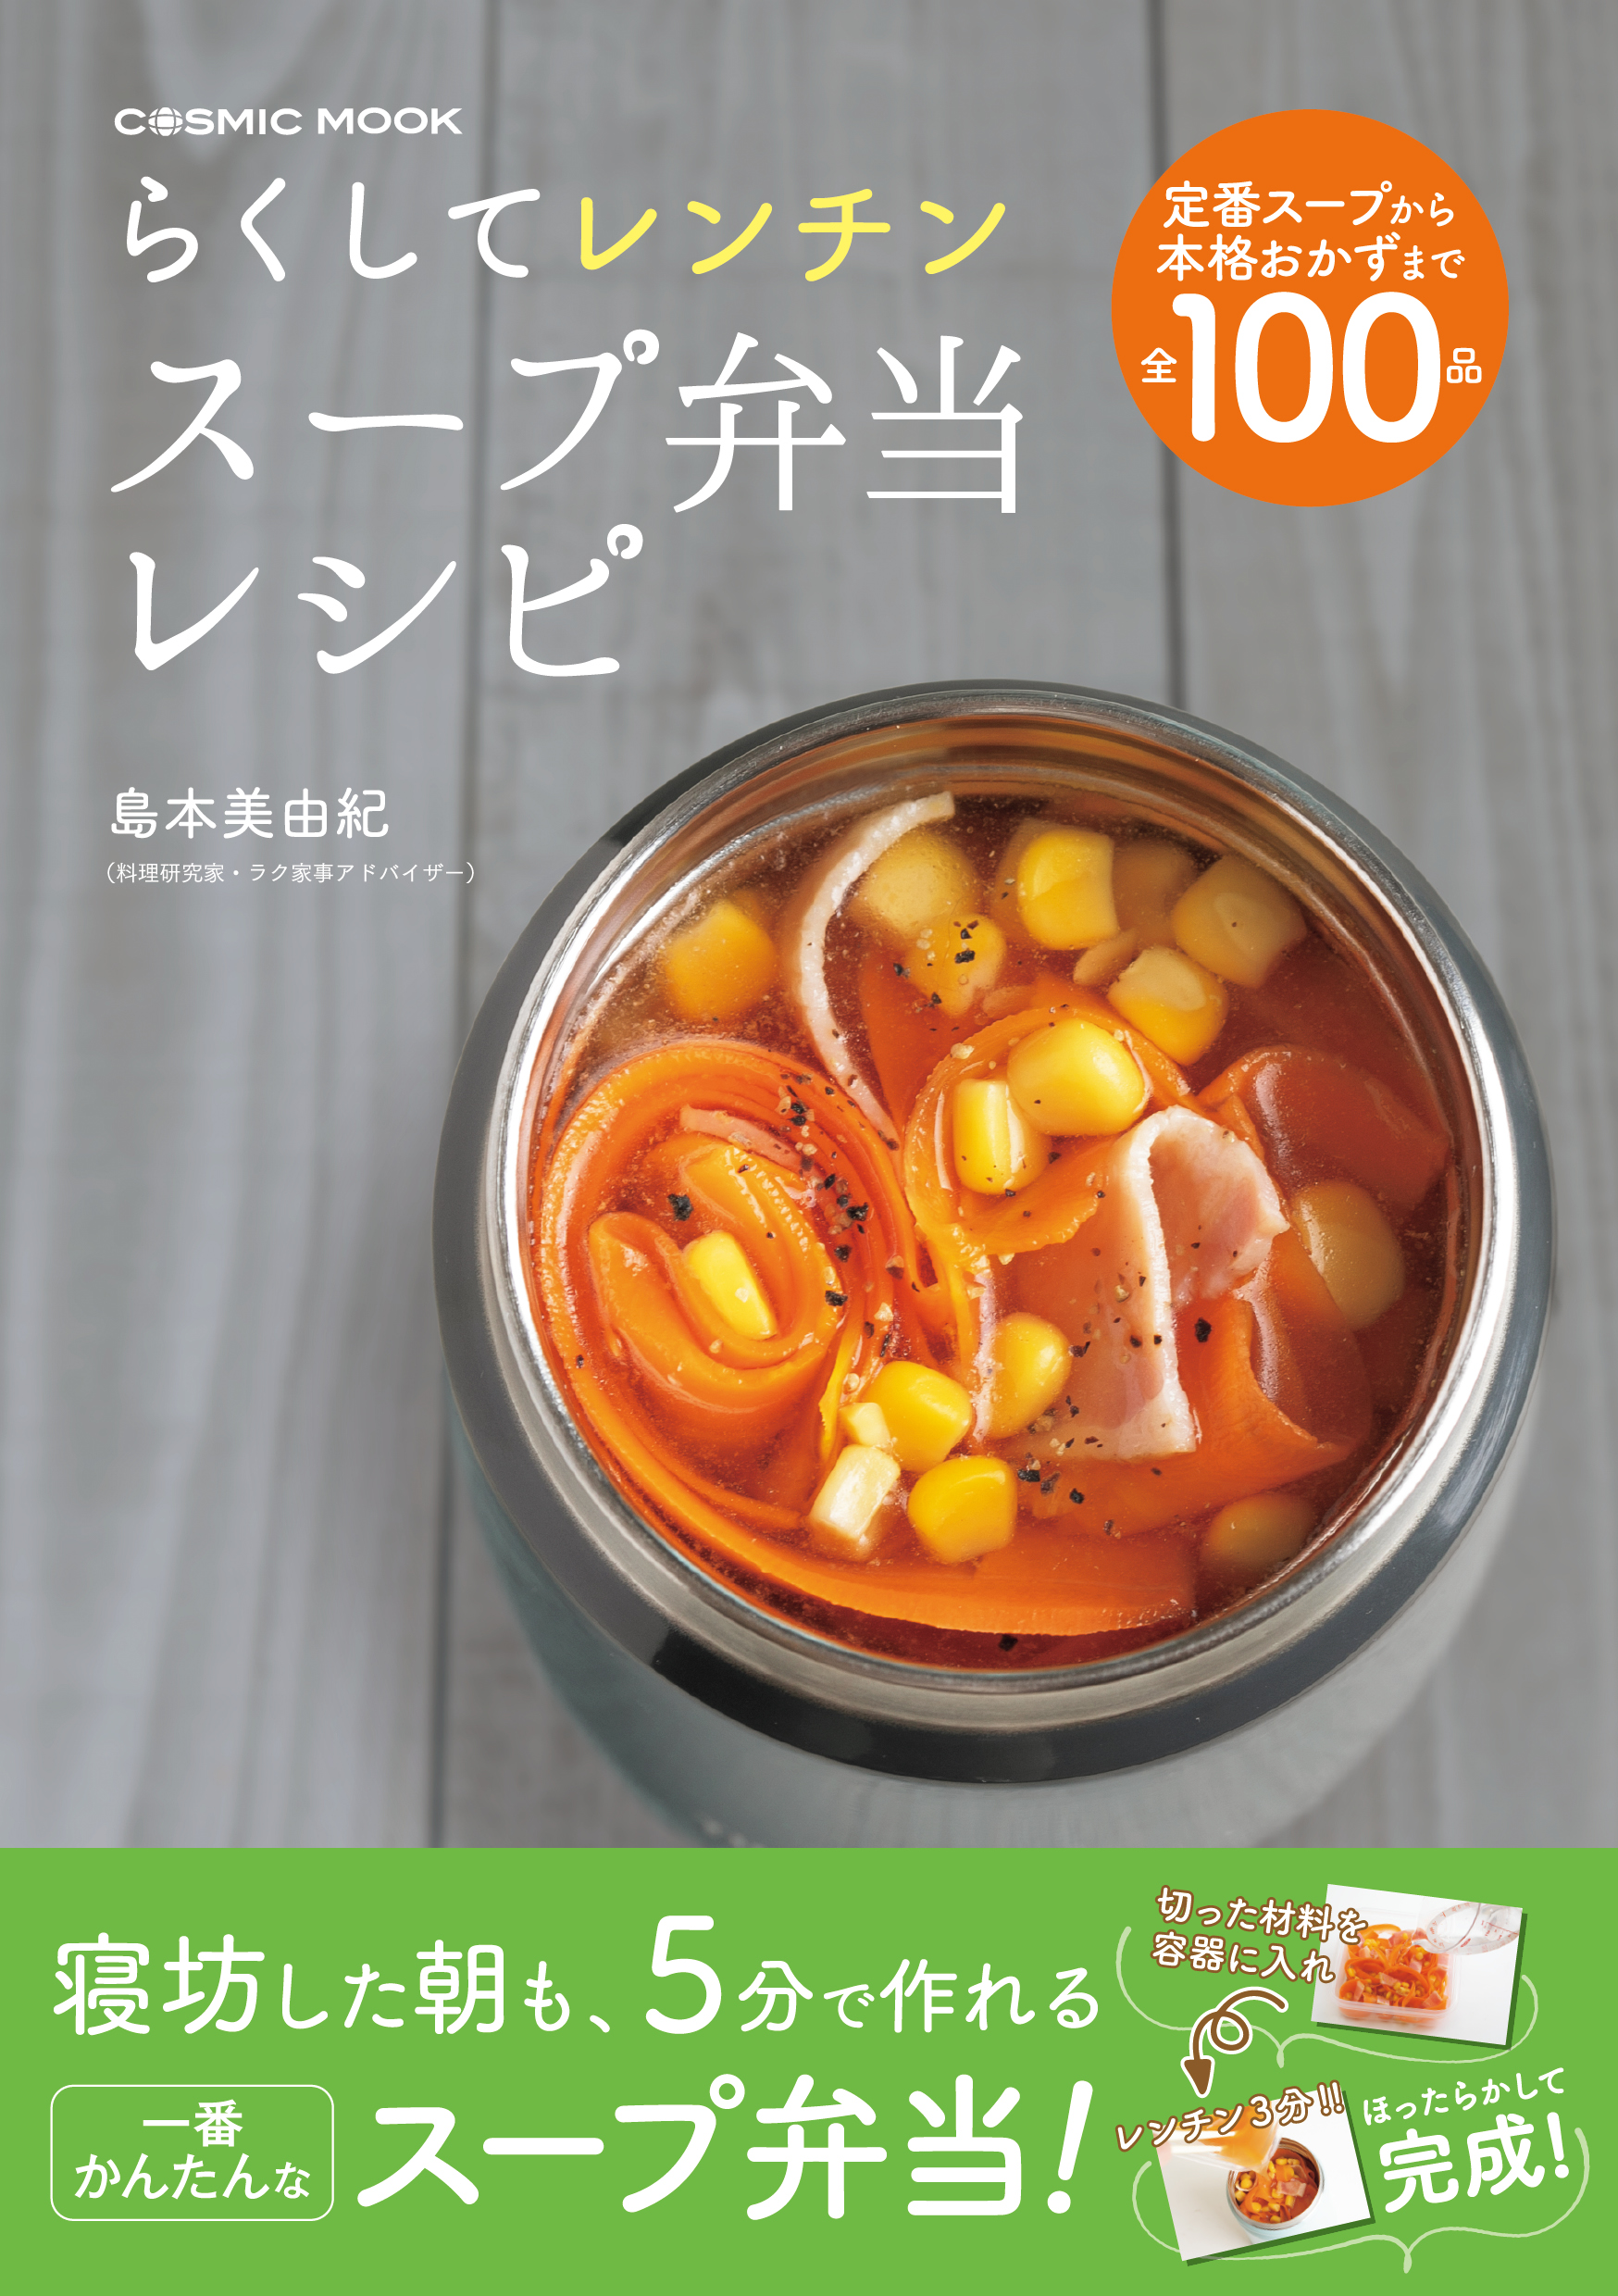 らくしてレンチン スープ弁当レシピ - 島本美由紀 - 漫画・ラノベ